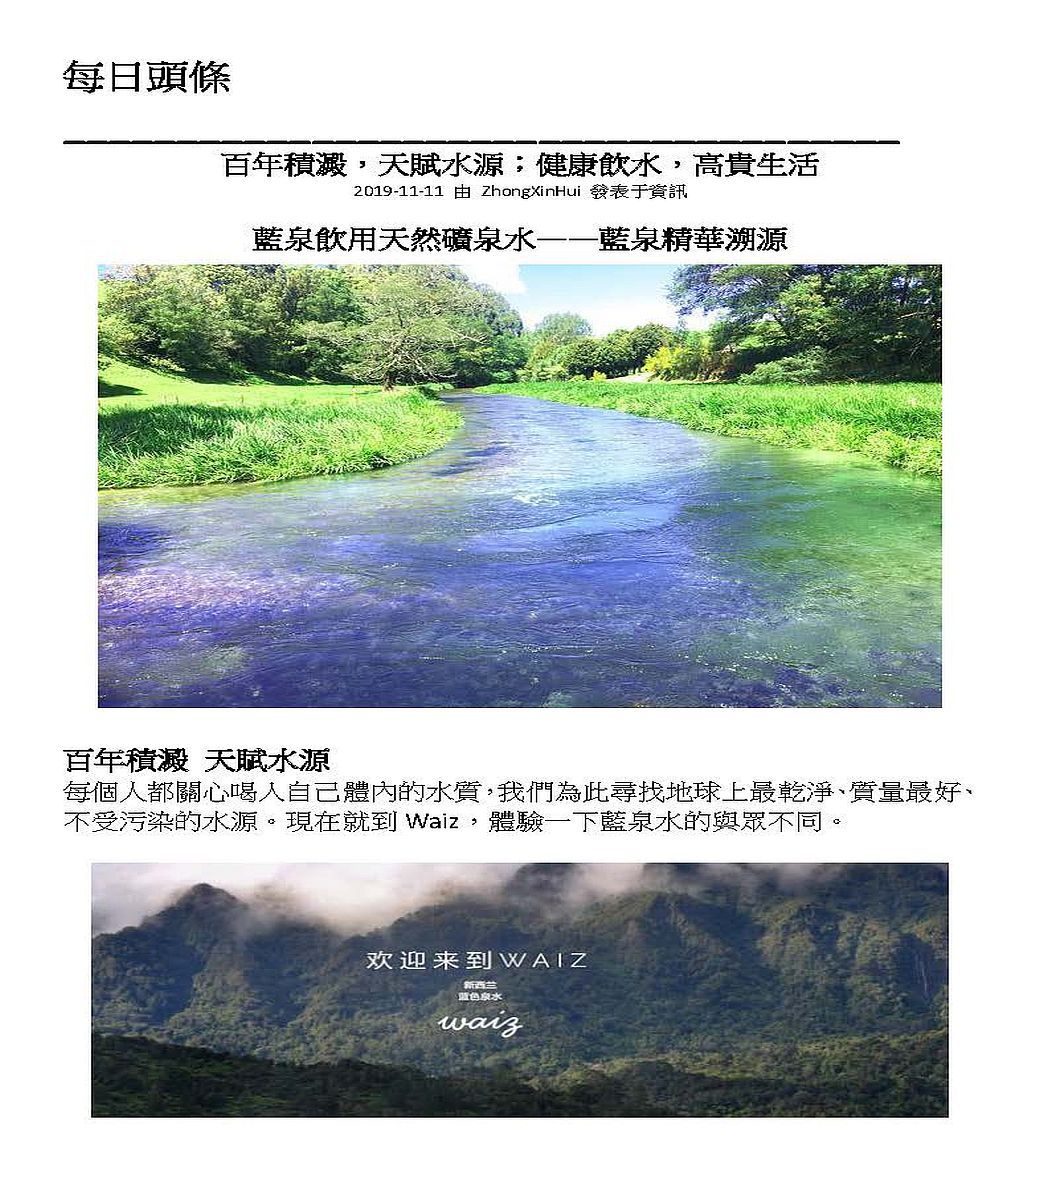 每日頭條百年積澱,天賦水源;健康飲水,高貴生活2019-11-11 由 ZhongXinHui 發表資訊藍泉飲用天然礦泉水——藍泉精華溯源百年積澱 天賦水源每個都關心喝人自己體內的水質,我們為此尋找地球上最乾淨、質量最好、不受污染的水源。現在就到 Waiz,體驗一下藍泉水的與眾不同。欢迎来到WAIZ水waiz